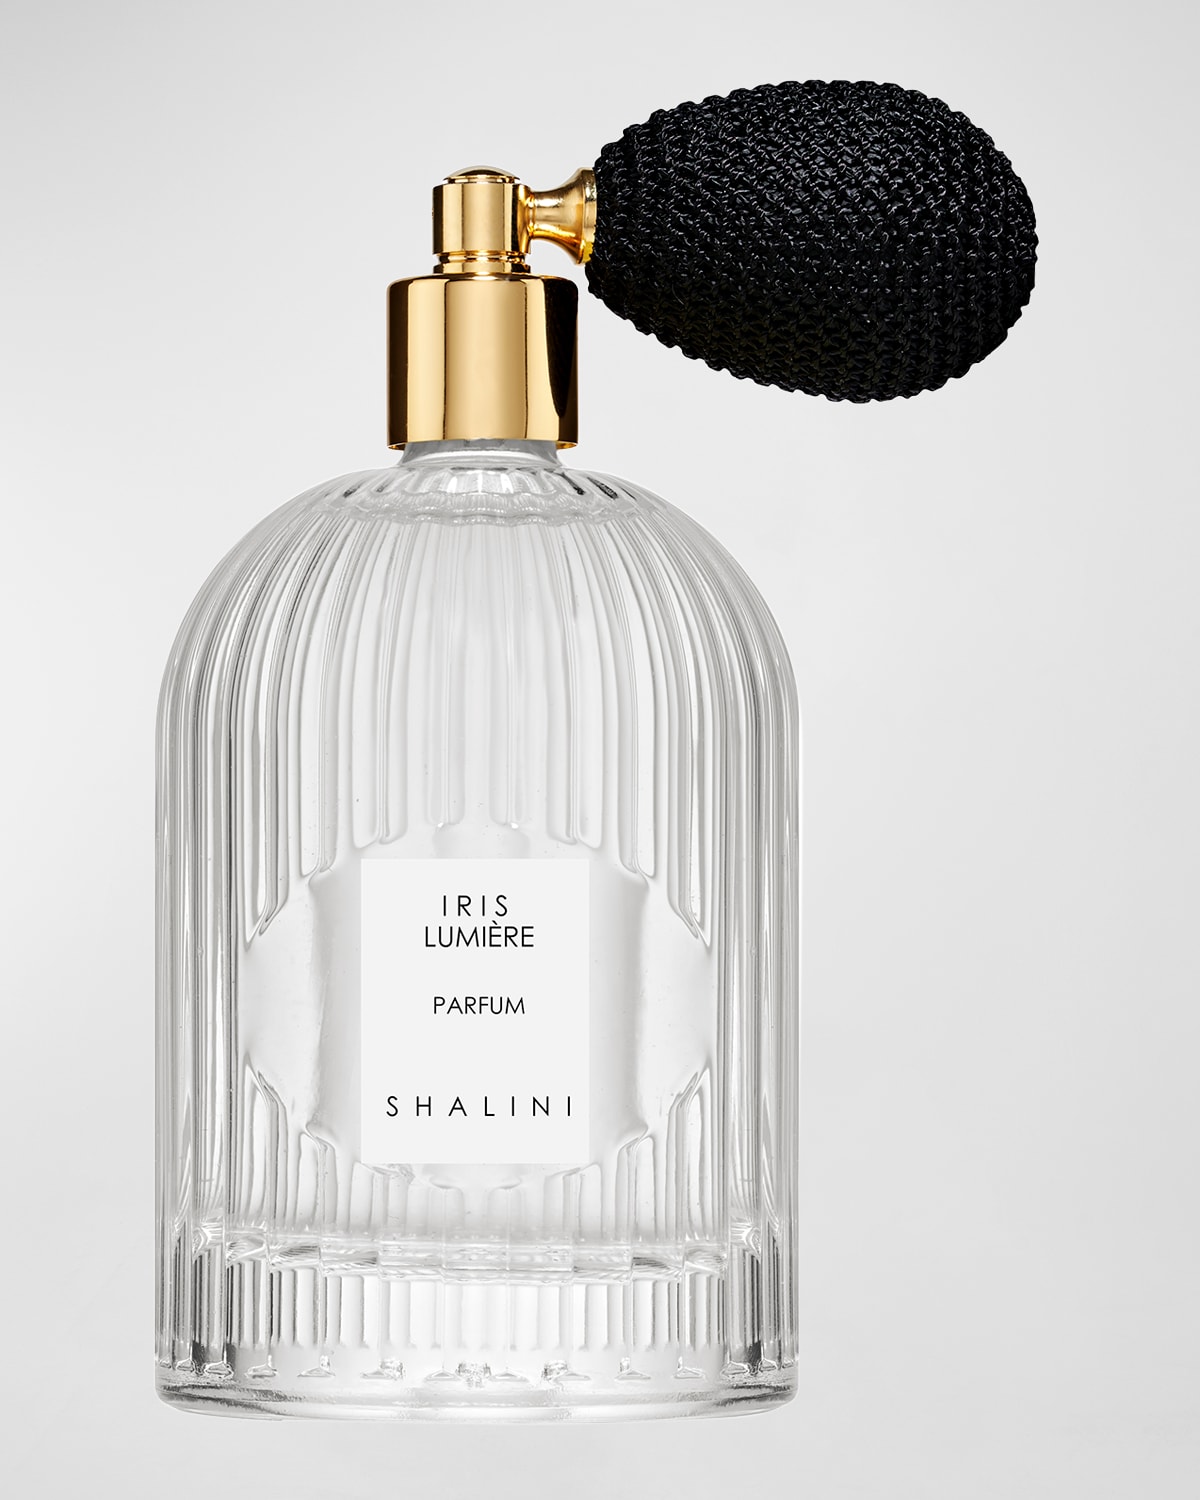 Iris Lumiere Parfum in Byzantine Glass Flacon w/ Black Bulb Atomizer, 3.4 oz.